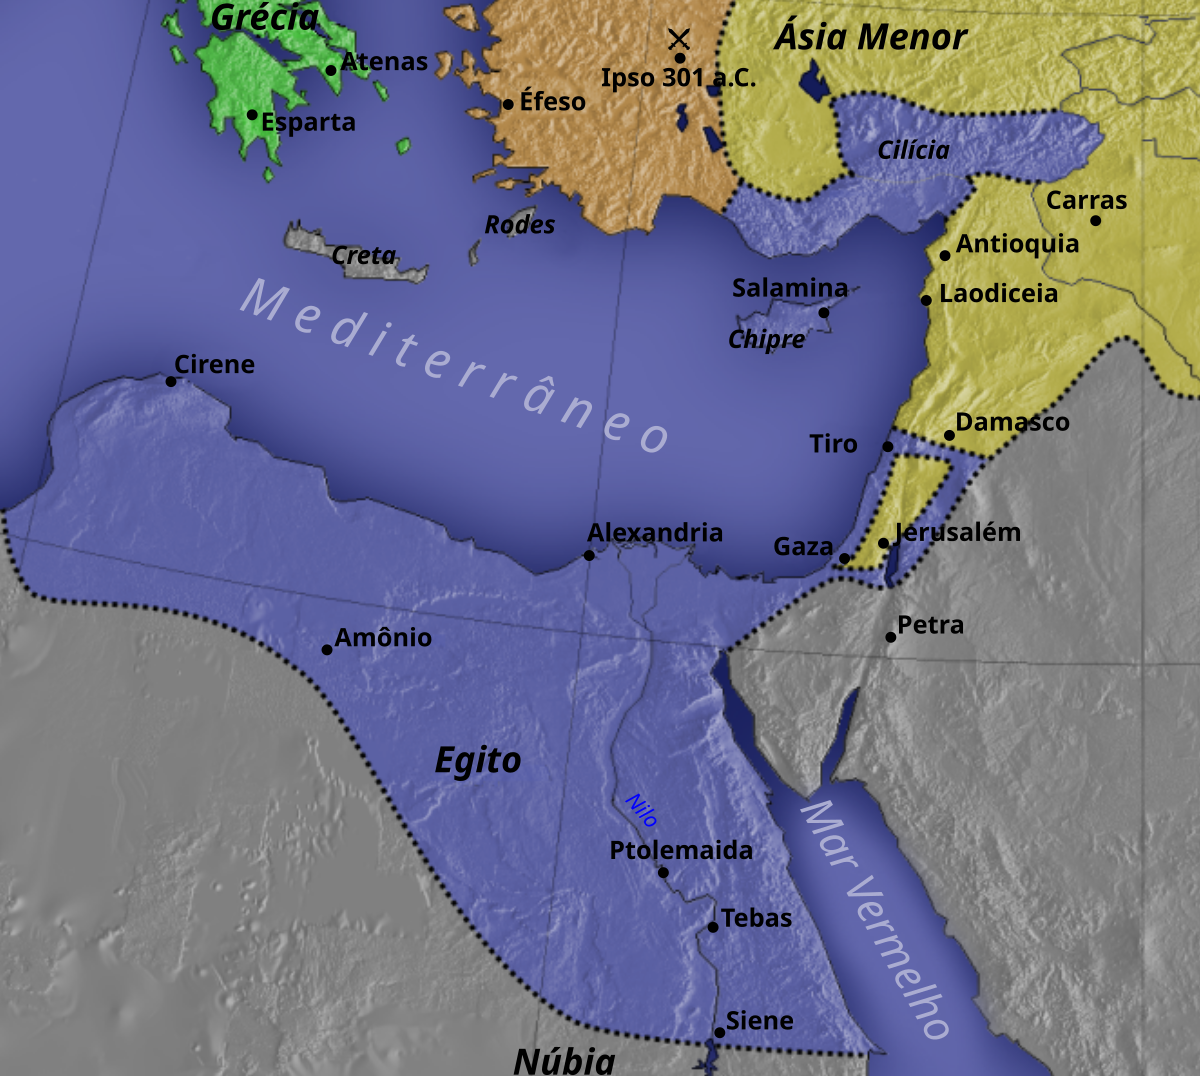 Ptolemeu – Wikipédia, a enciclopédia livre